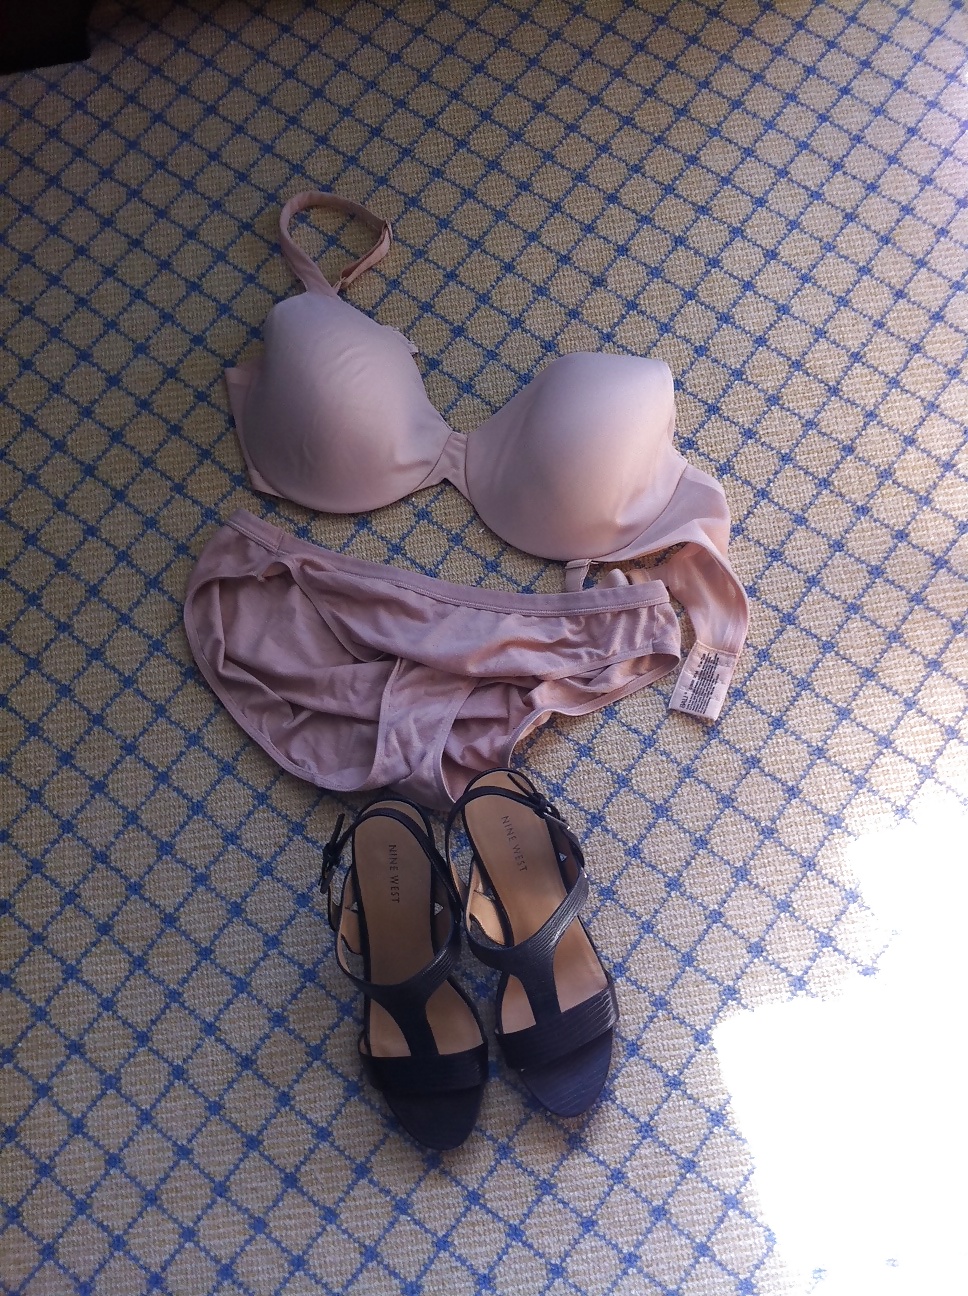 Free 36D bra, panties, shoes.. photos